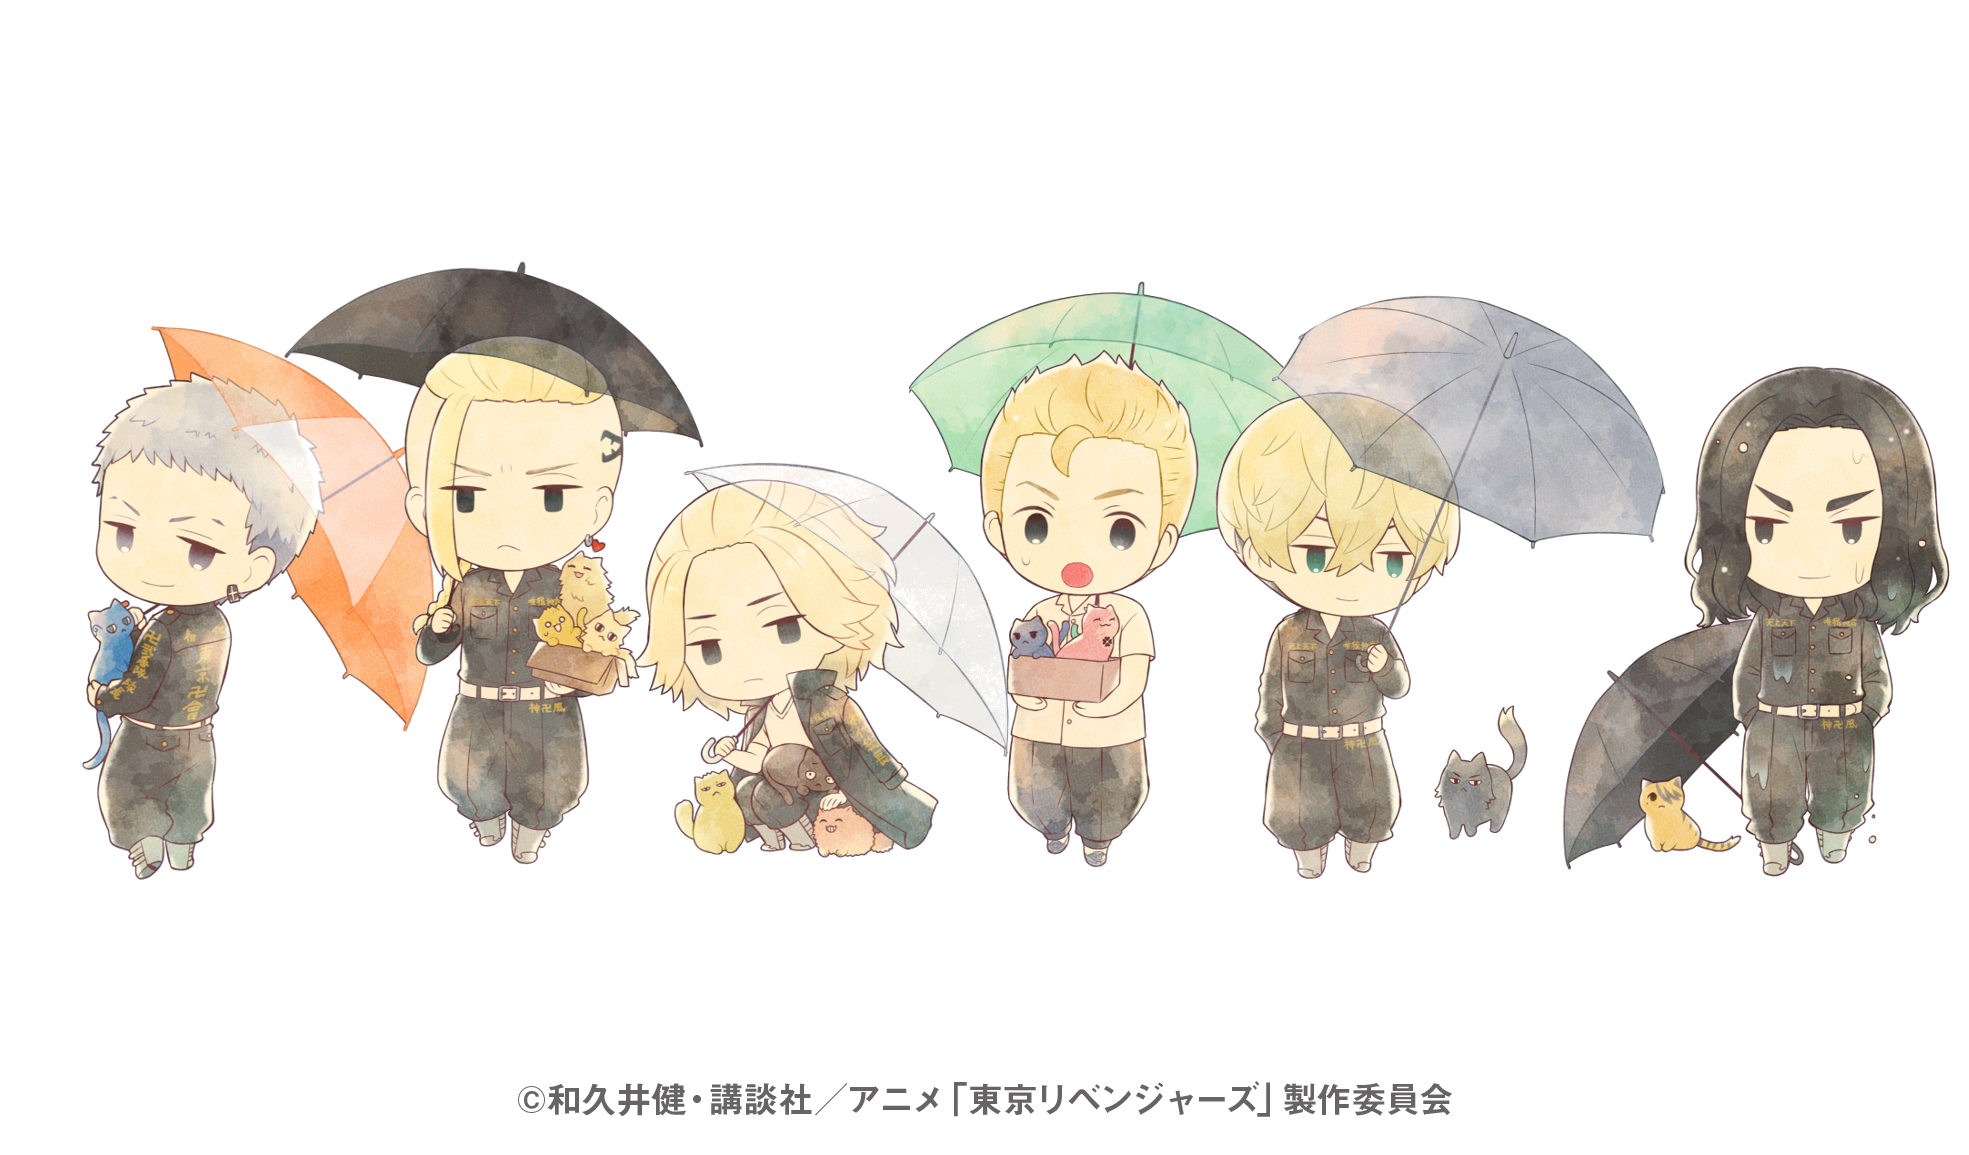 大人気tvアニメ 東京リベンジャーズ より傘をモチーフとした 傘っこ シリーズの商品が登場 21年7月15日 エキサイトニュース